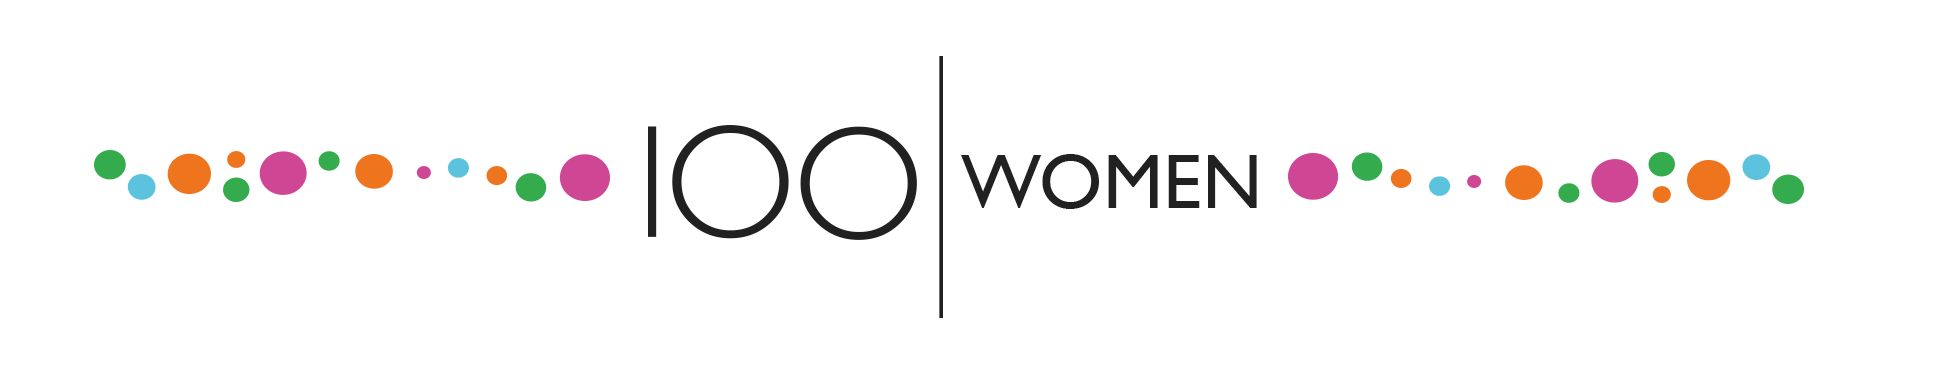 100 women banner